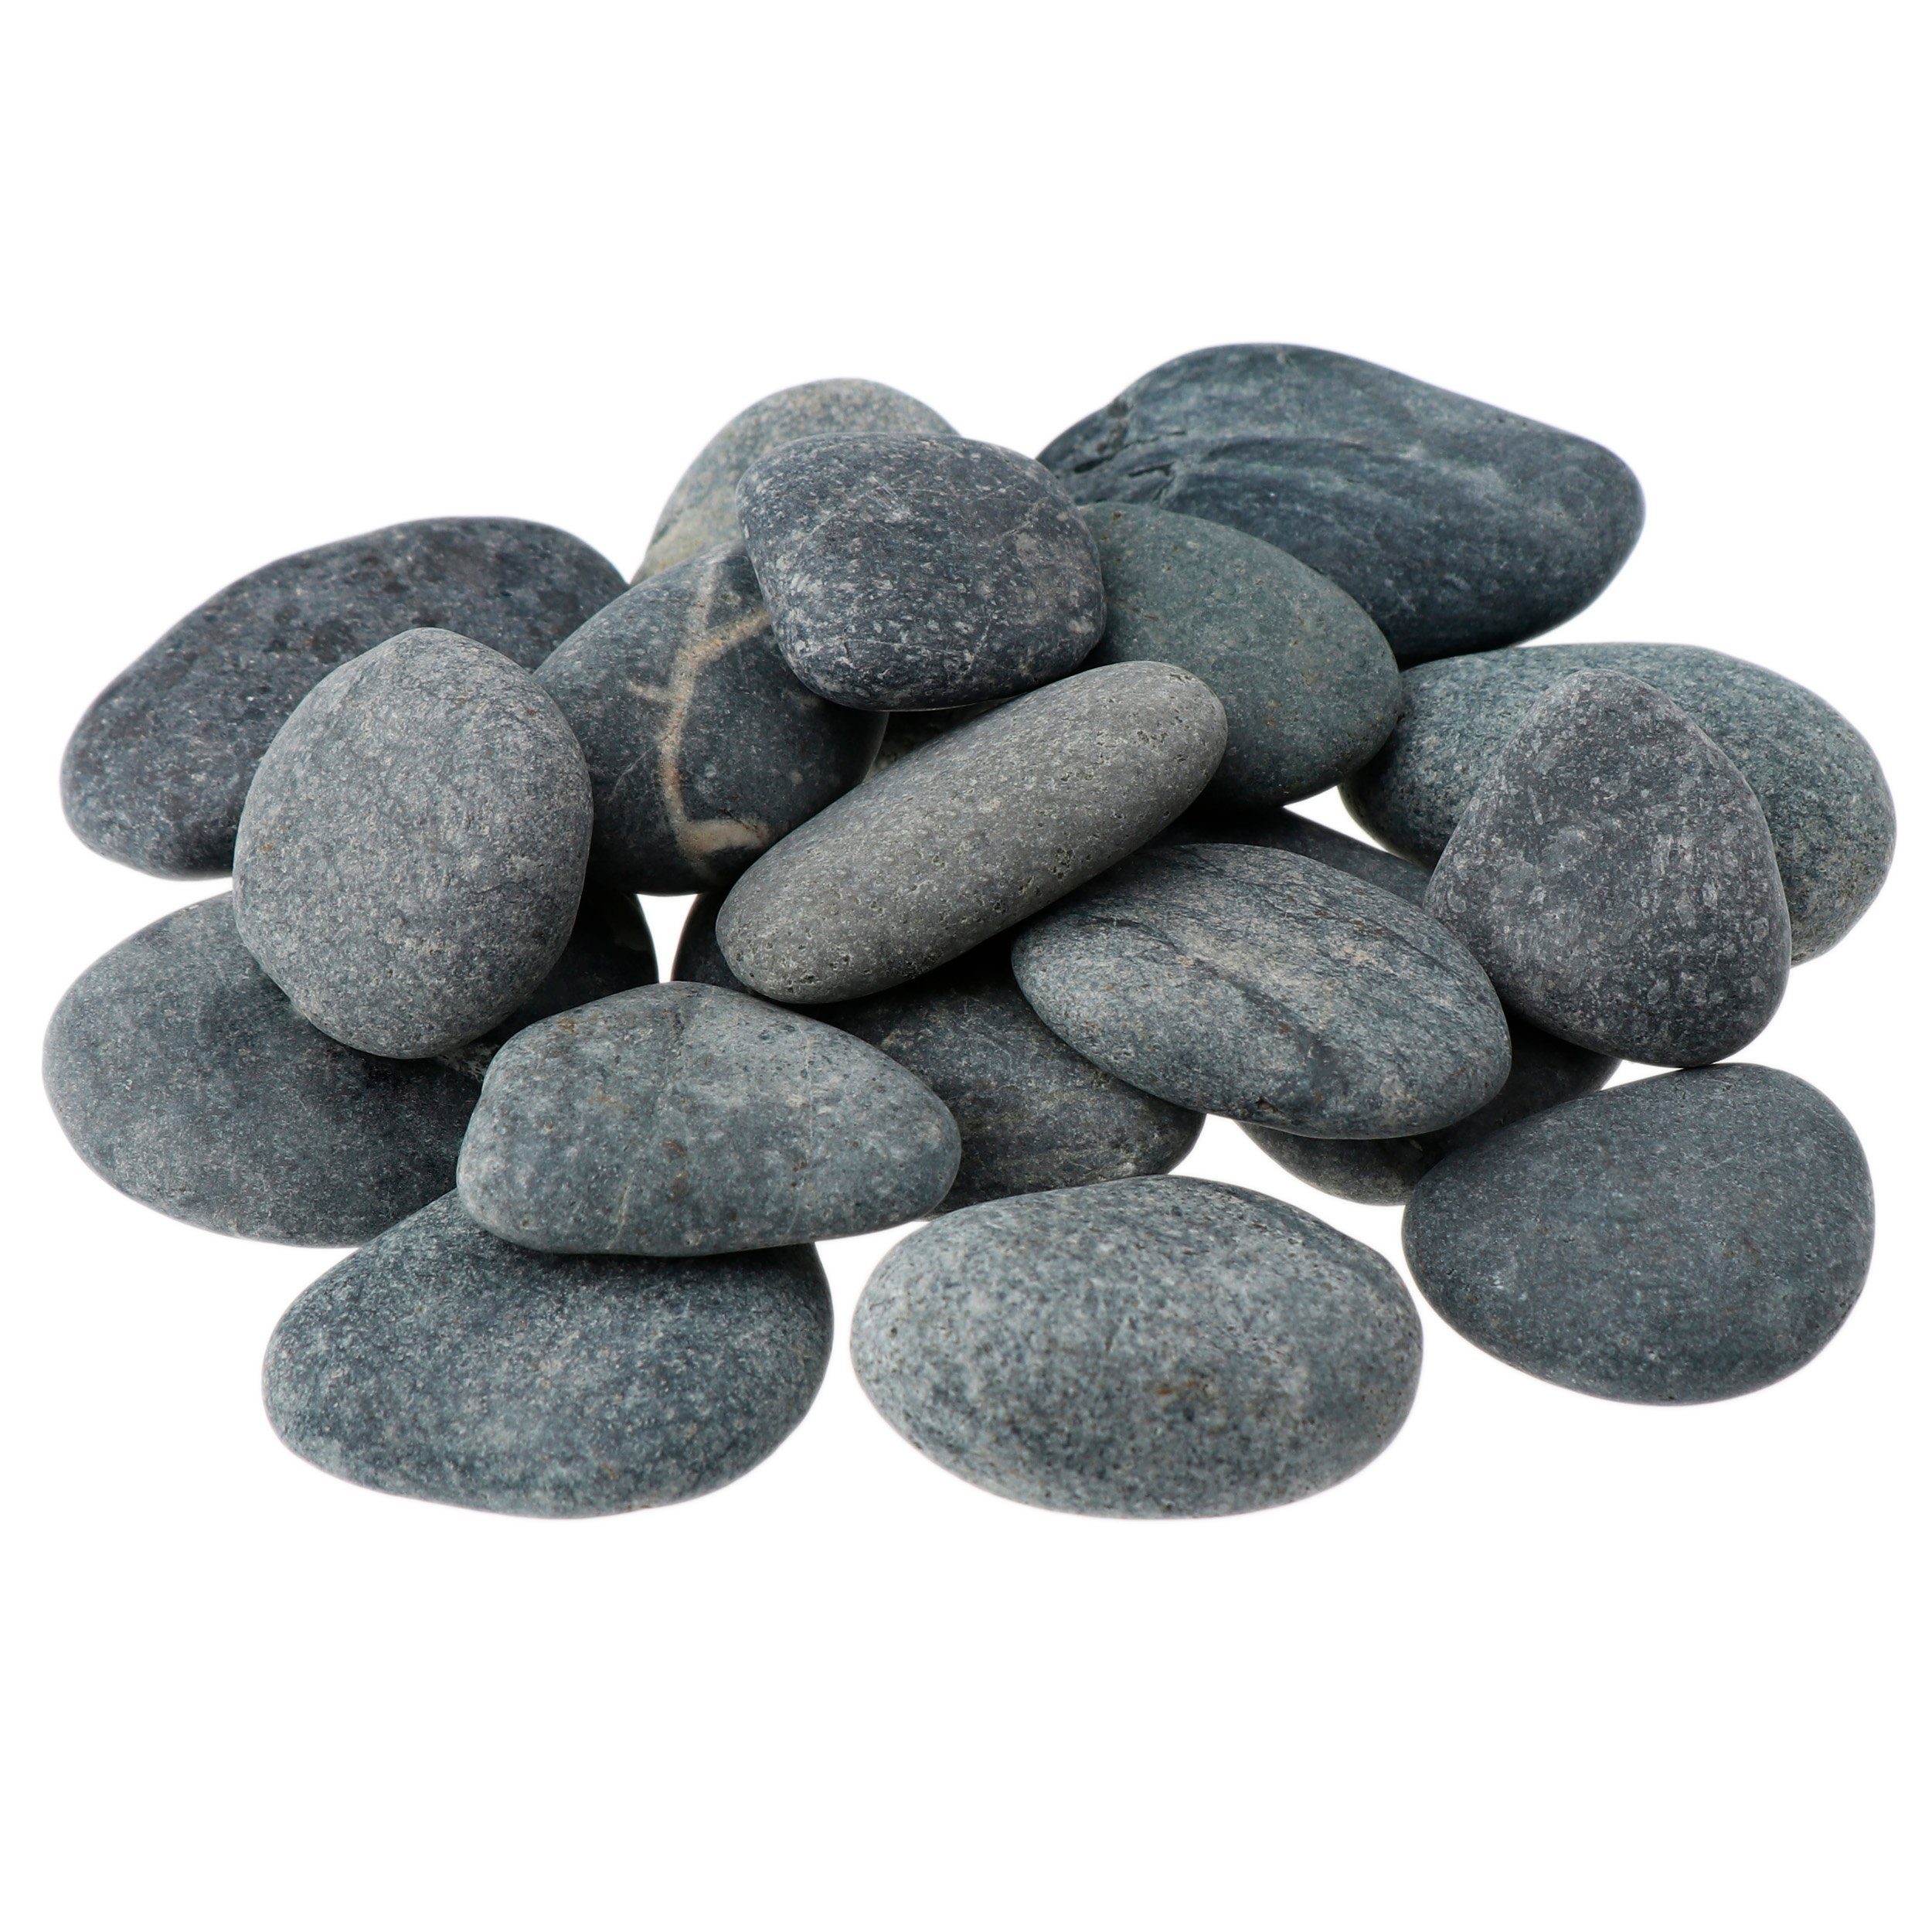 NKlaus Mineralstein 900g Hot Stone 50 - 60mm Massagesteine Wellness Entspannungsstein vulk